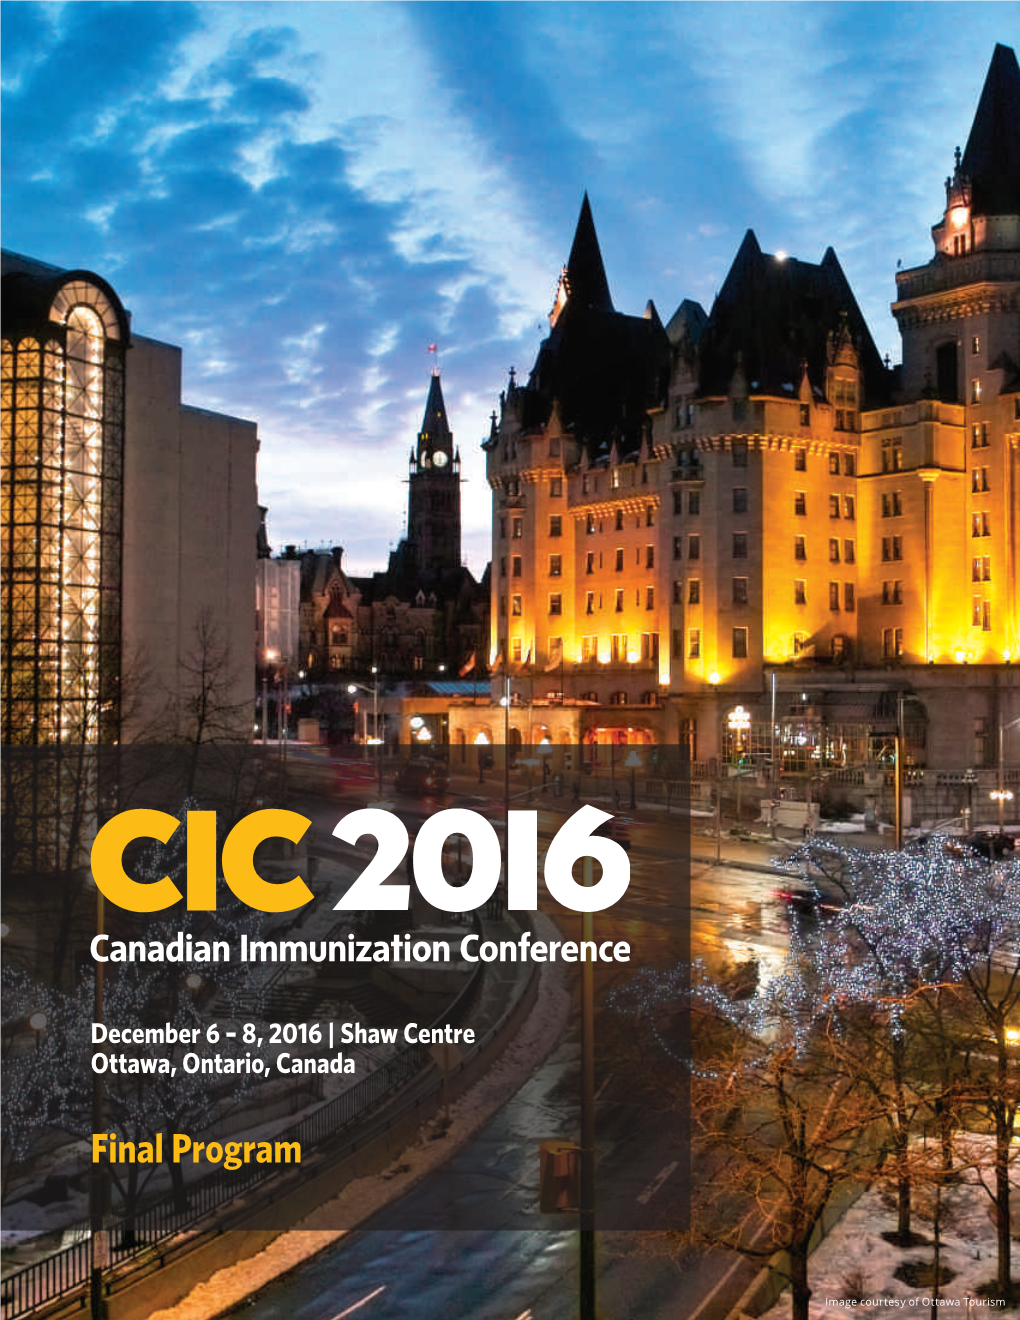 Image Courtesy of Ottawa Tourism CIC 2016